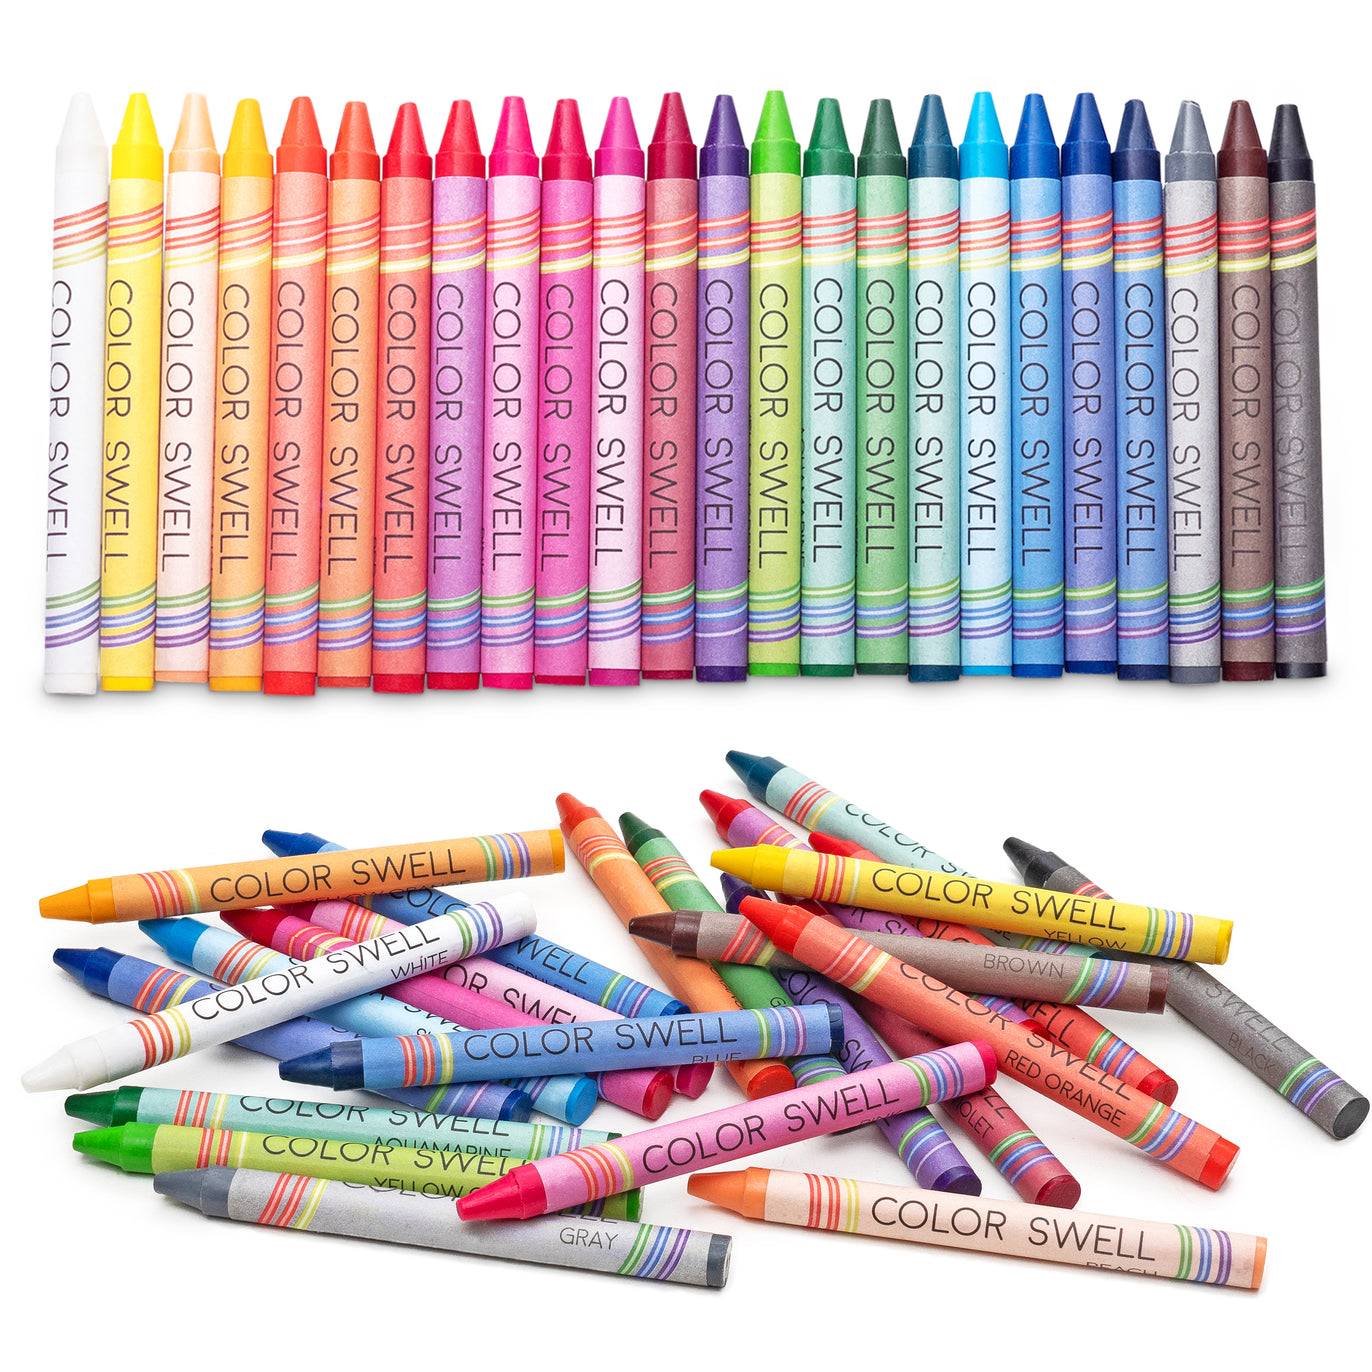 Crayon graphite mine HB x3 CARREFOUR : le lot de 3 crayons